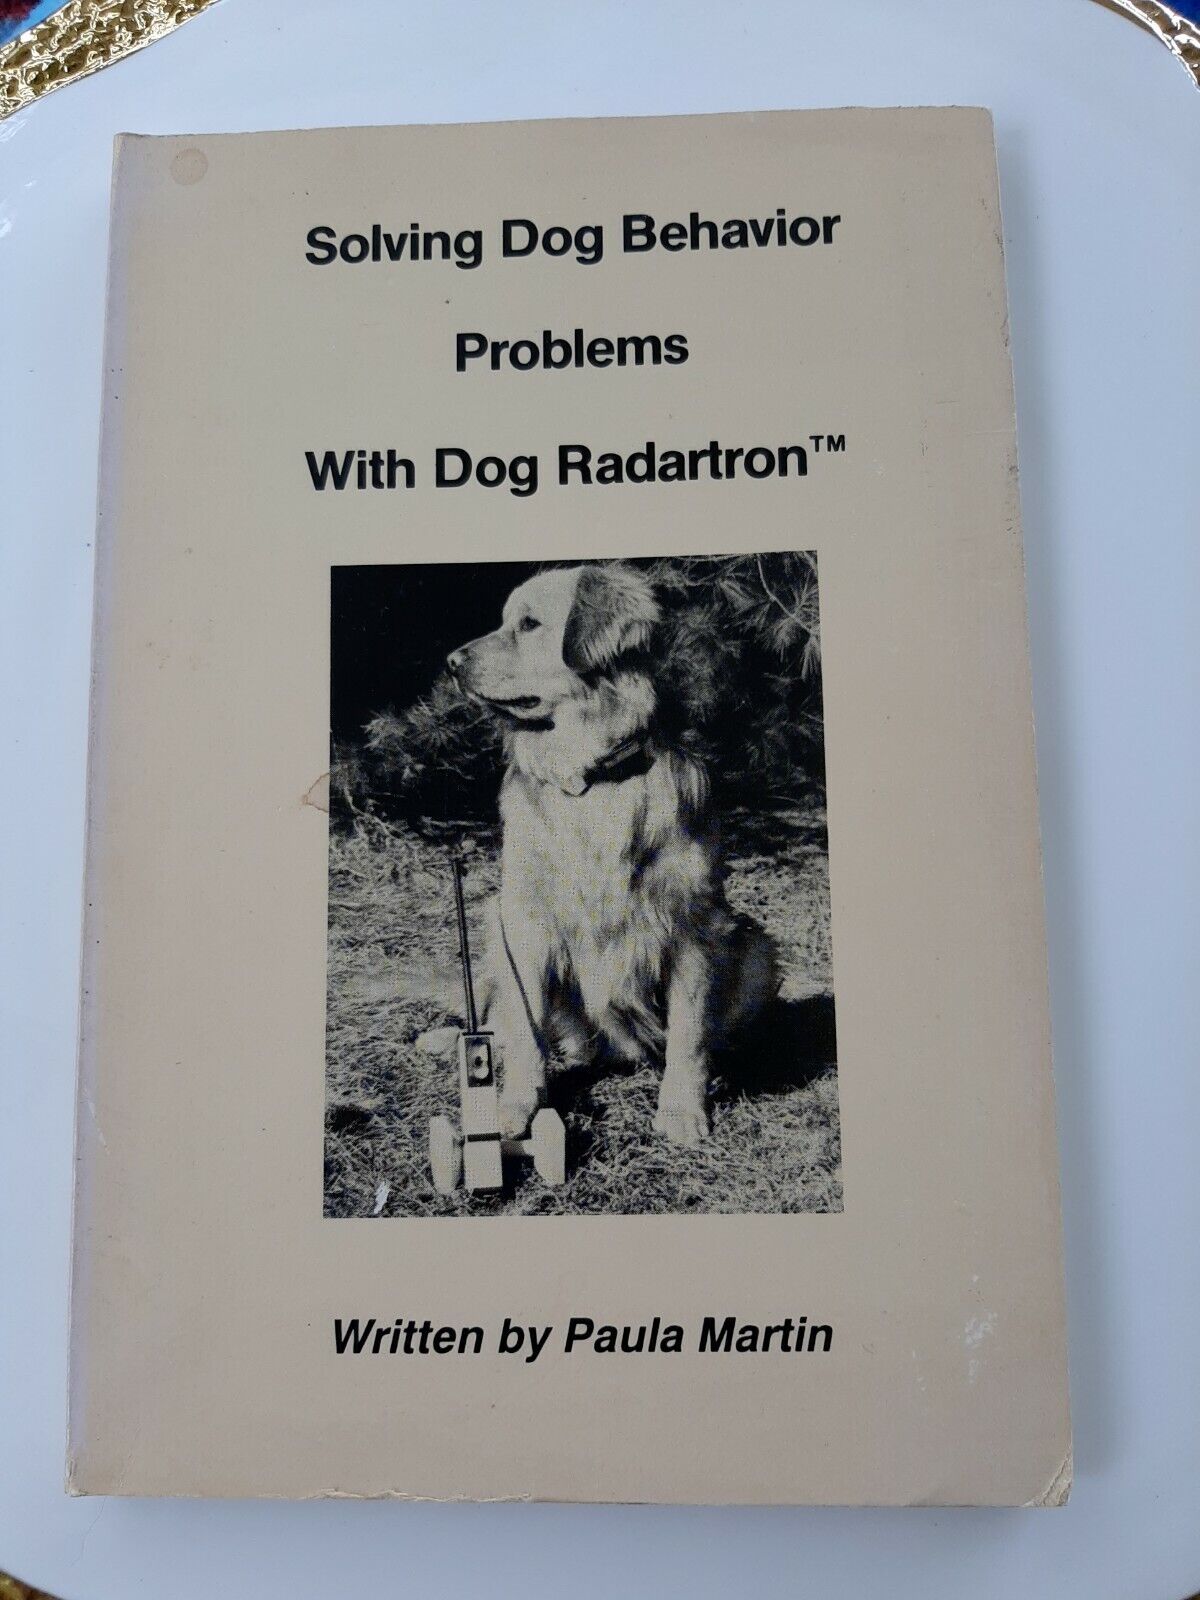 DOG TRAINING BOOK  SOLVING DOG BEHAVIOR PROBLEMS WITH DOG RADARTRON